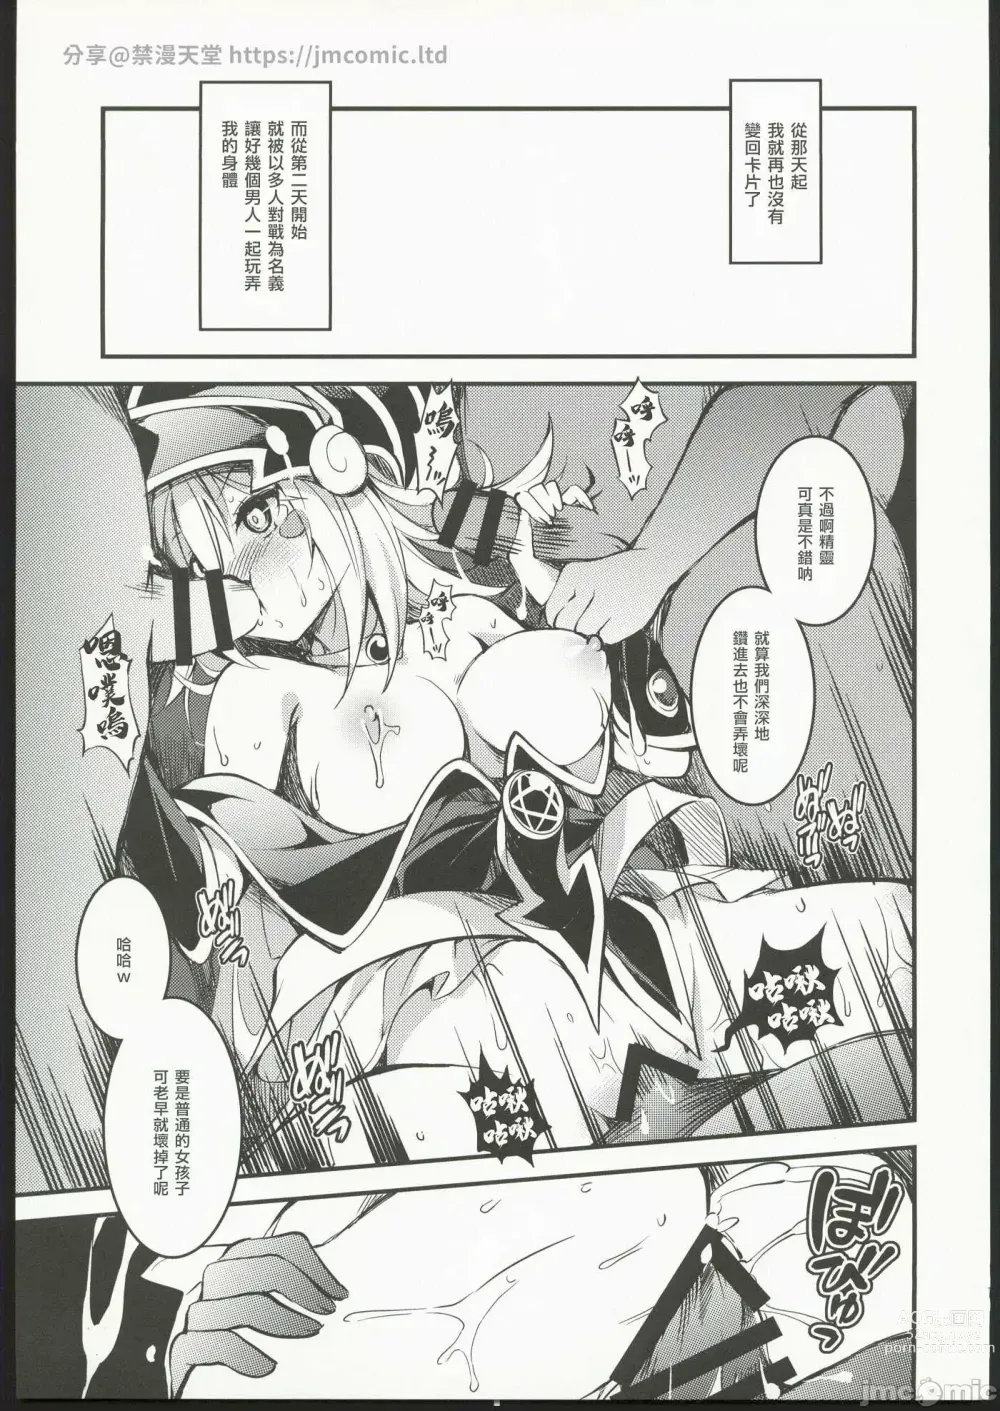 Page 12 of doujinshi Ikenie no Saidan